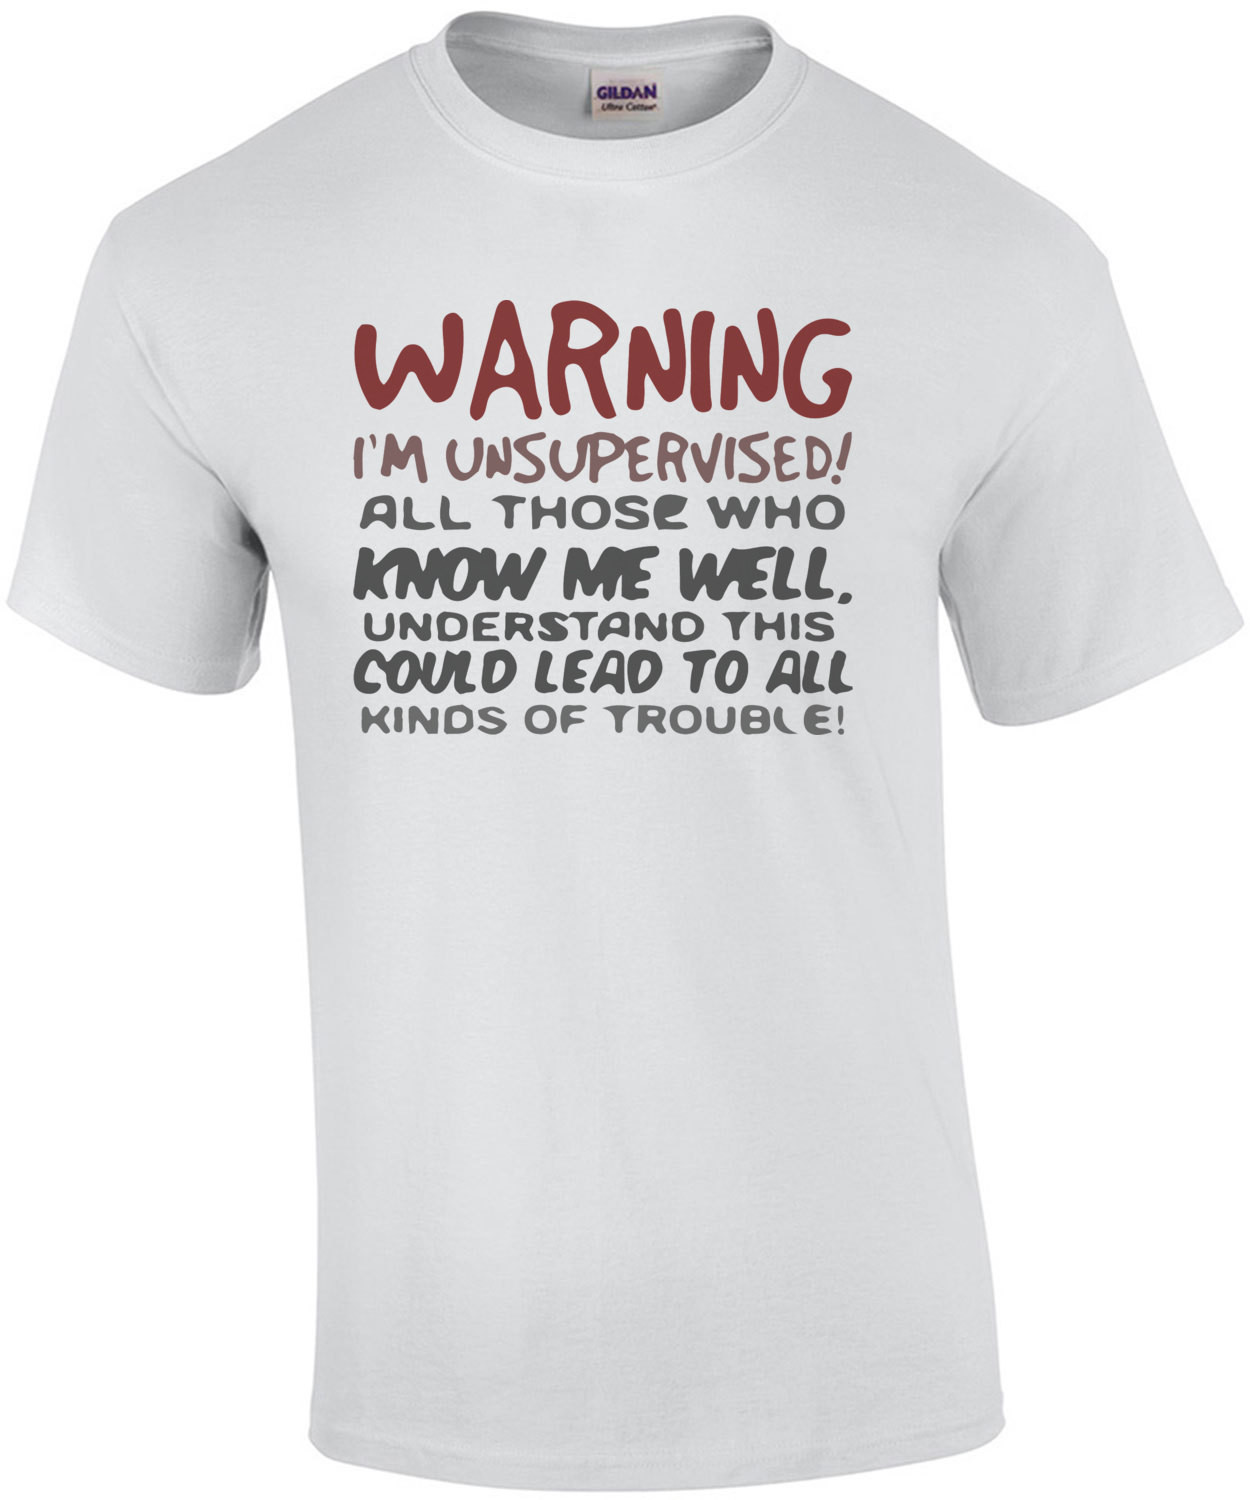 Warning I'm unsupervised - Funny T-Shirt